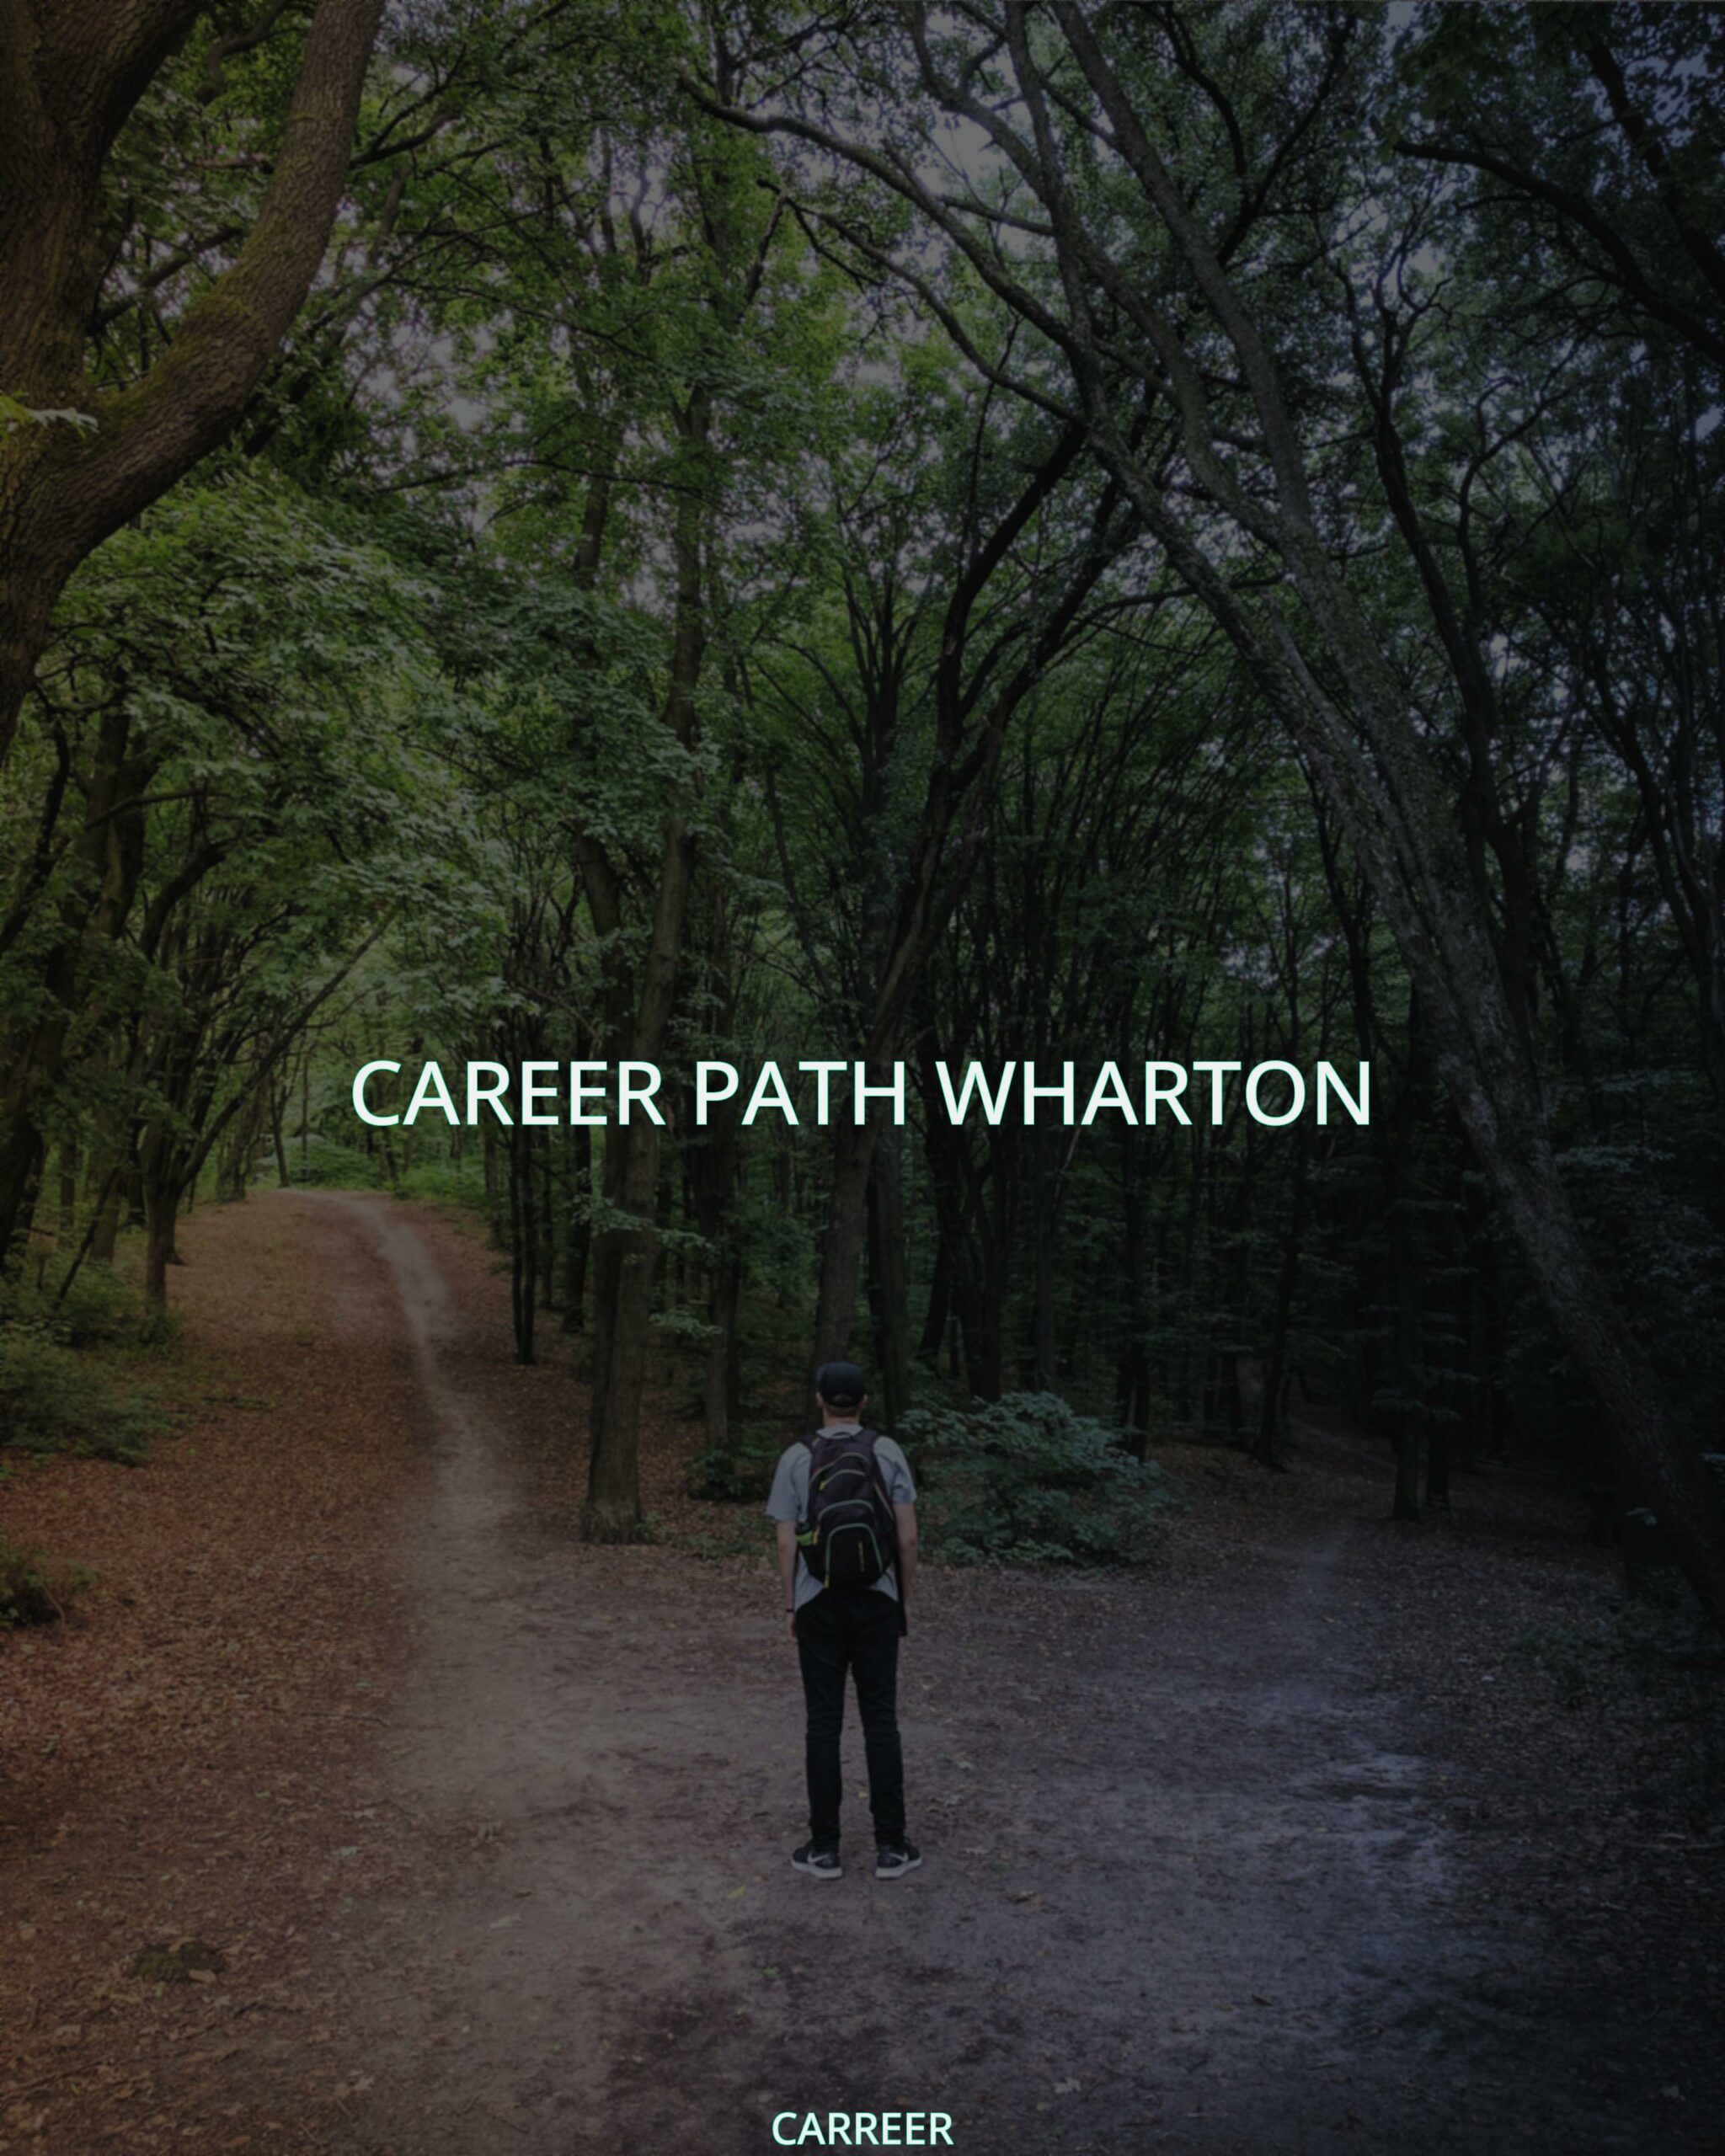 Career path wharton